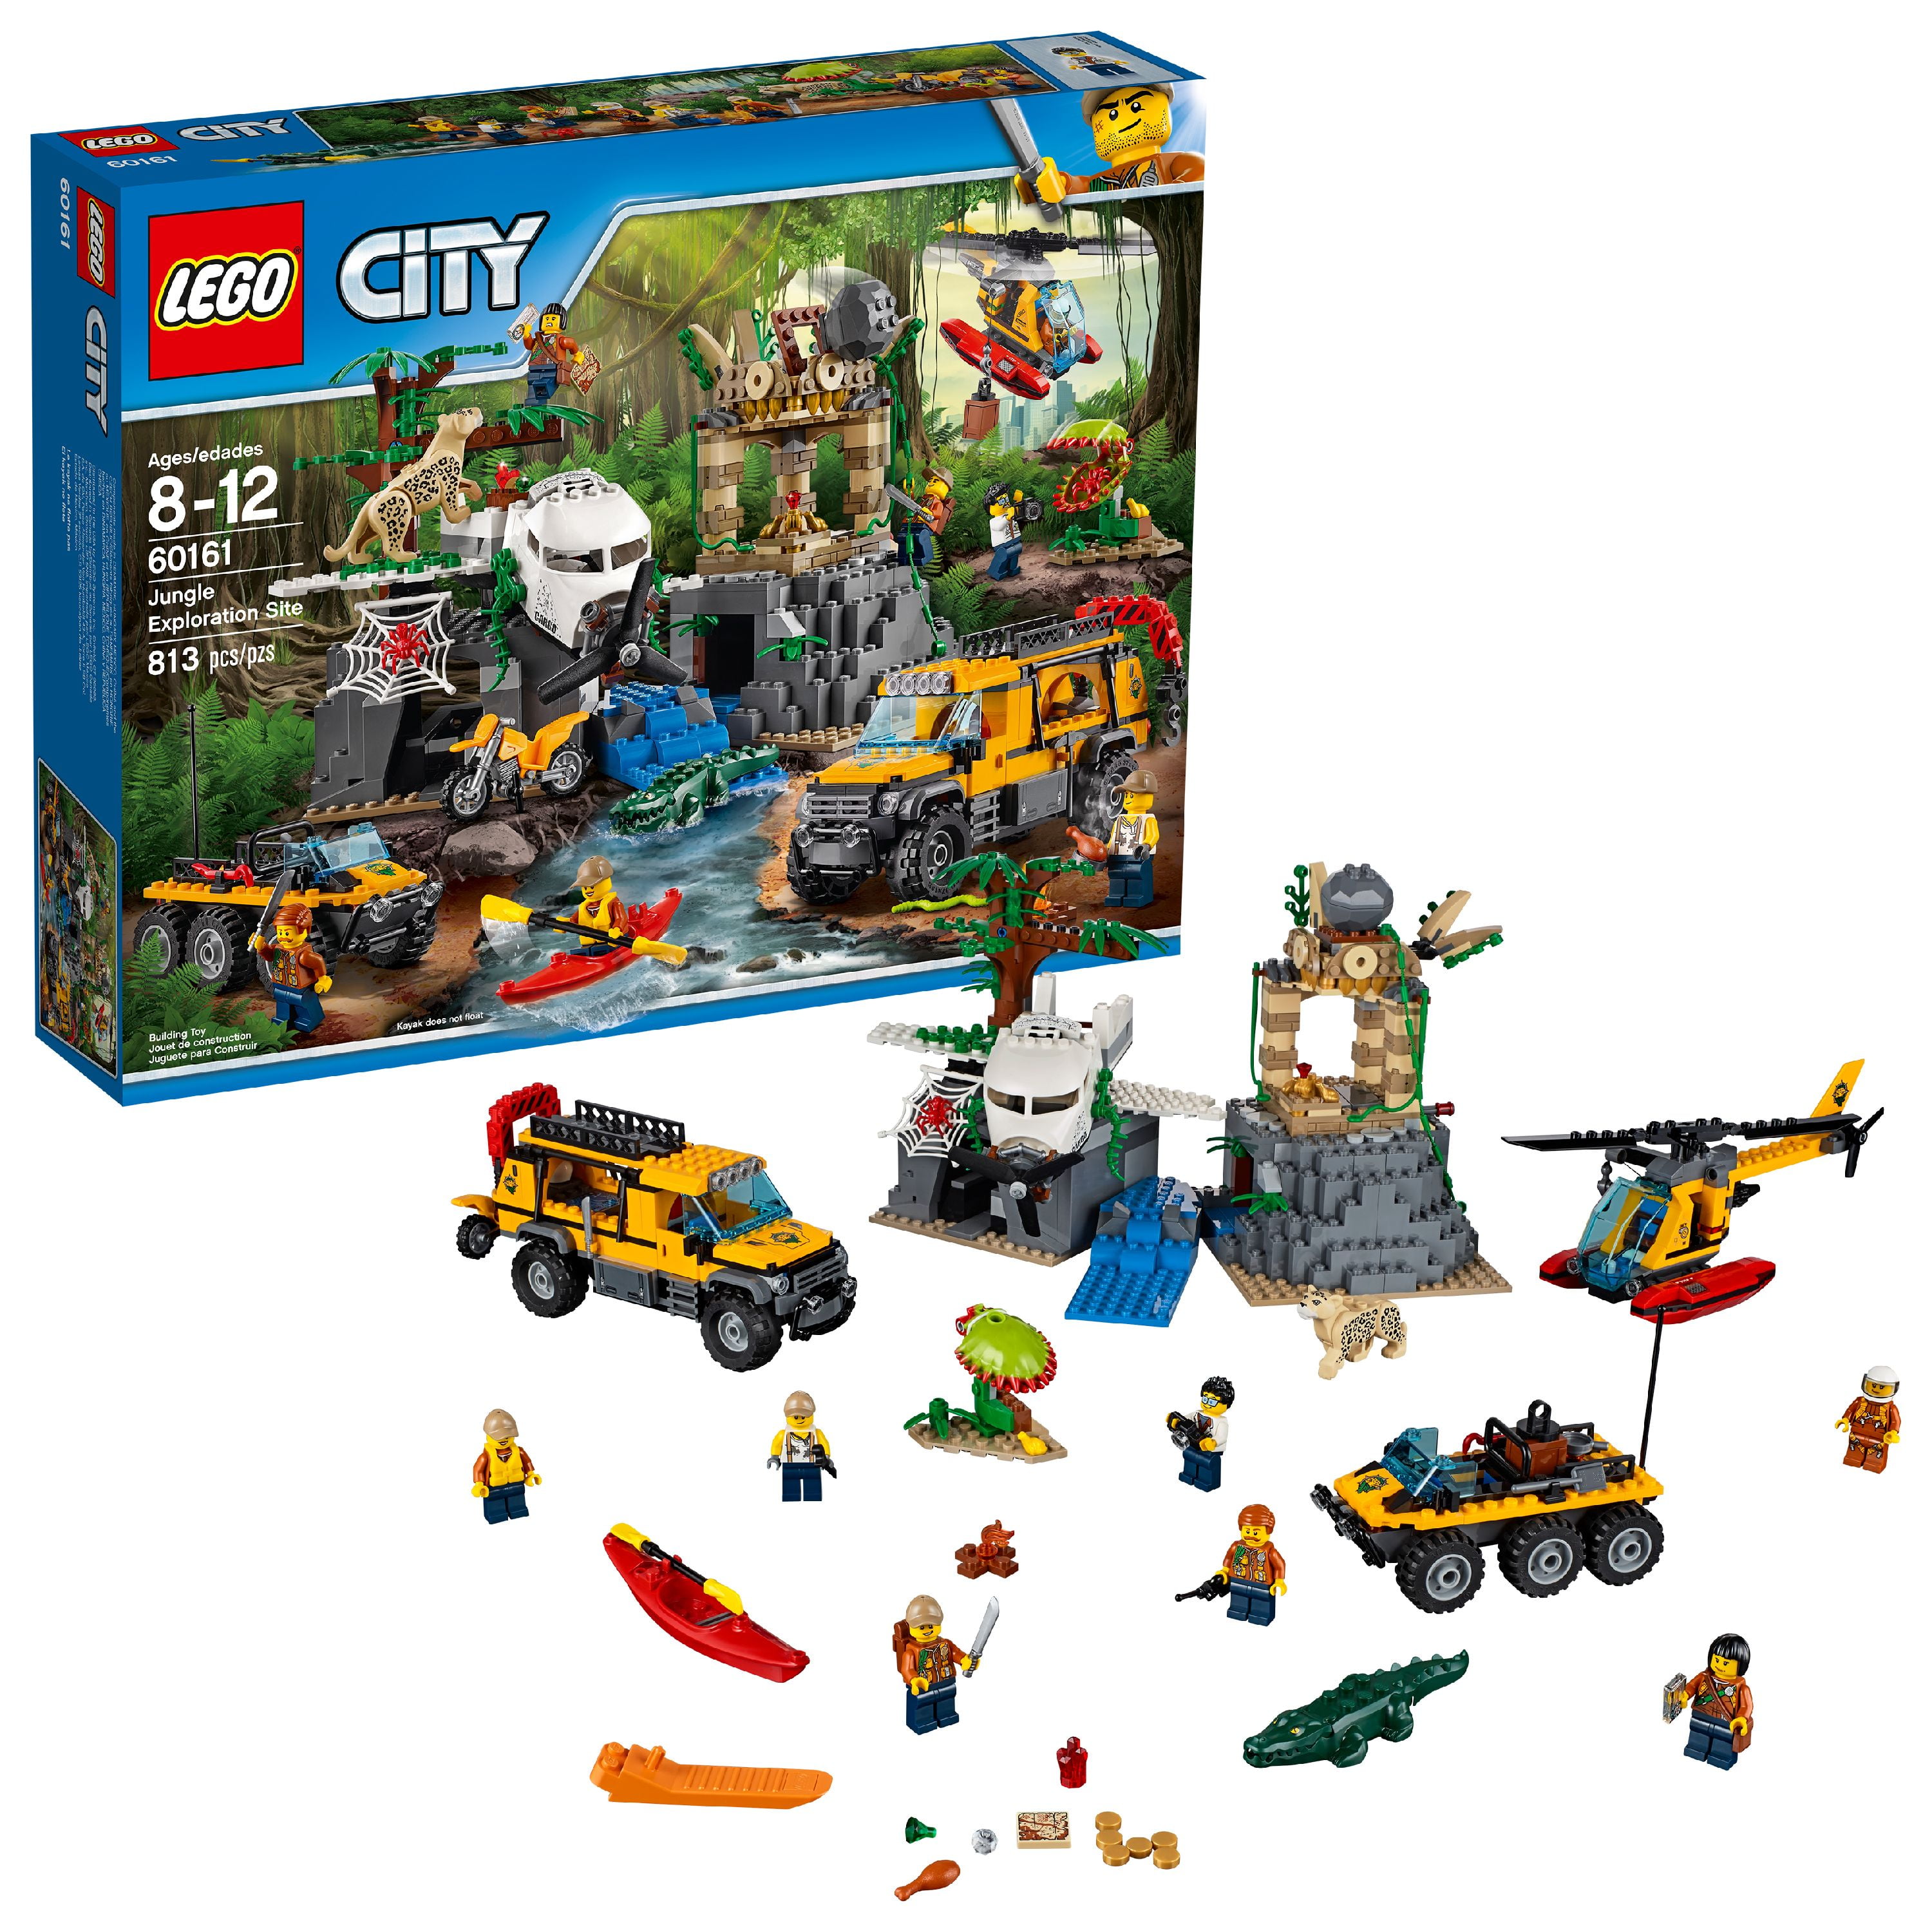 Lego City Jungle Explorers Jungle Site 60161 - Walmart.com